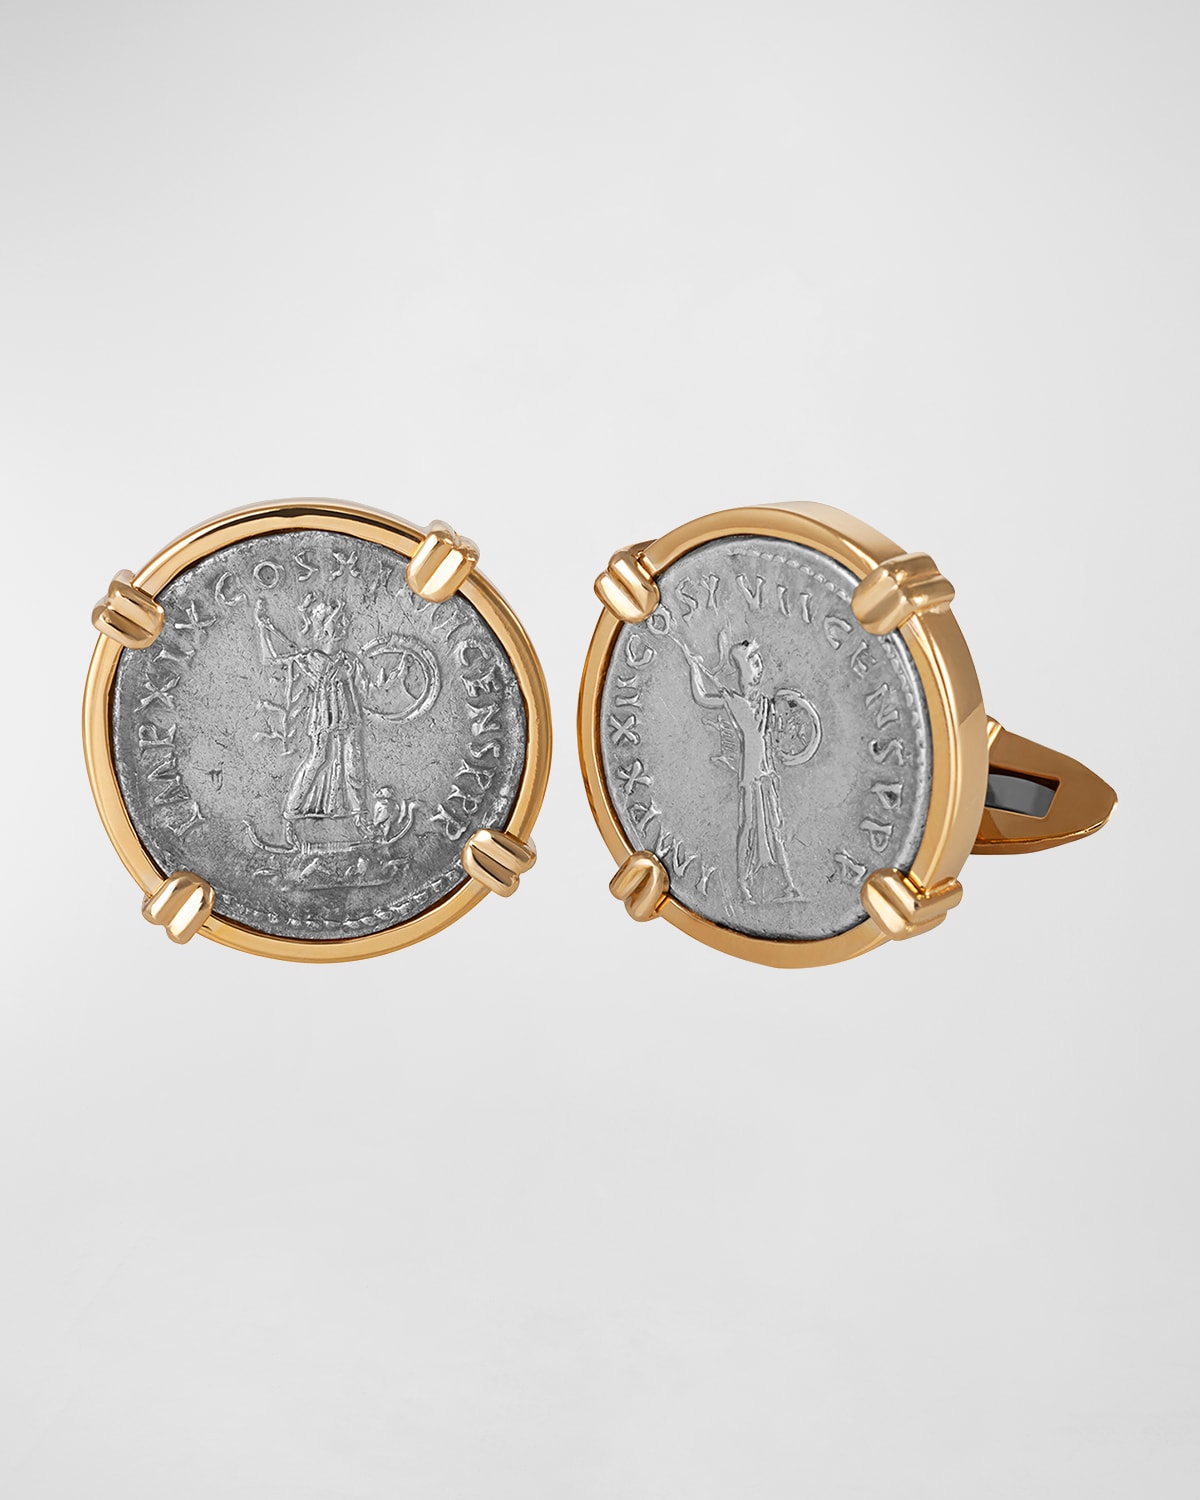 Jorge Adeler Men's Gods & Heroes 18k Yellow Gold Ancient Minerva Coin Cufflinks